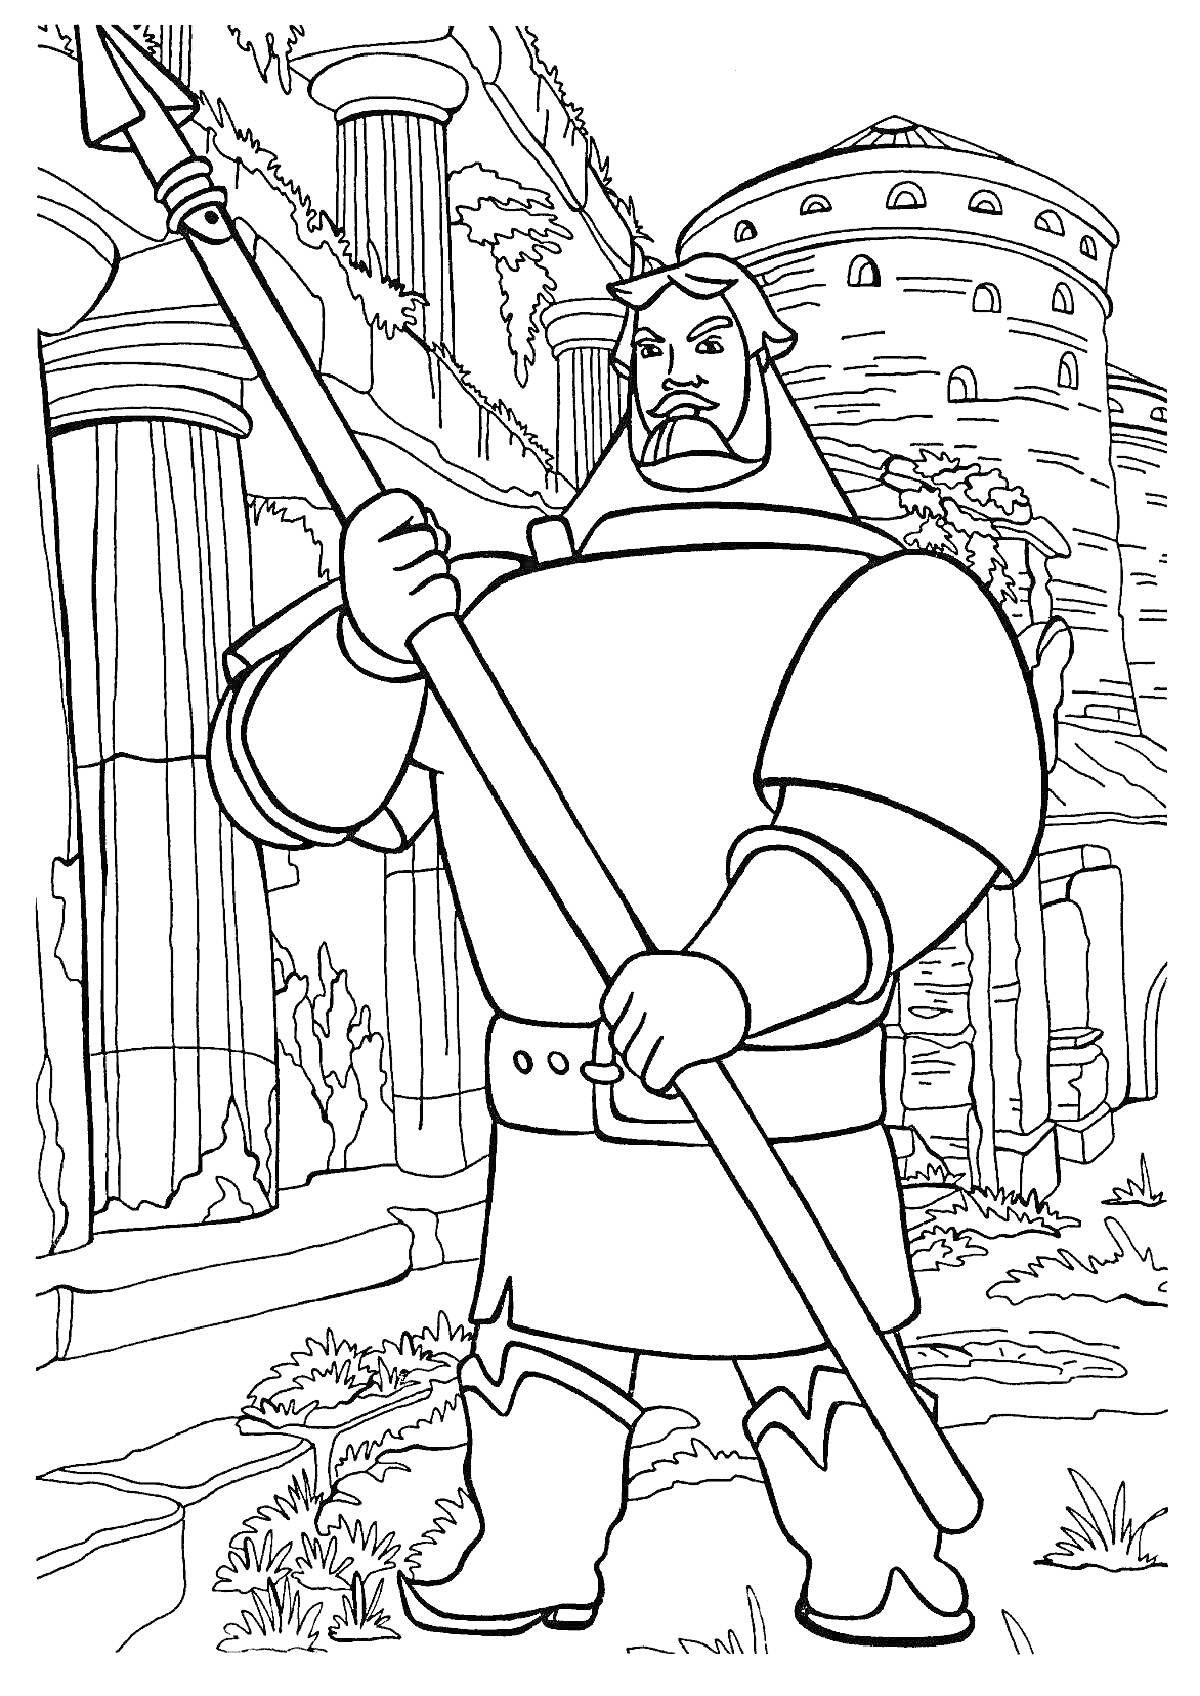 Богатырь с копьем на фоне древнего города